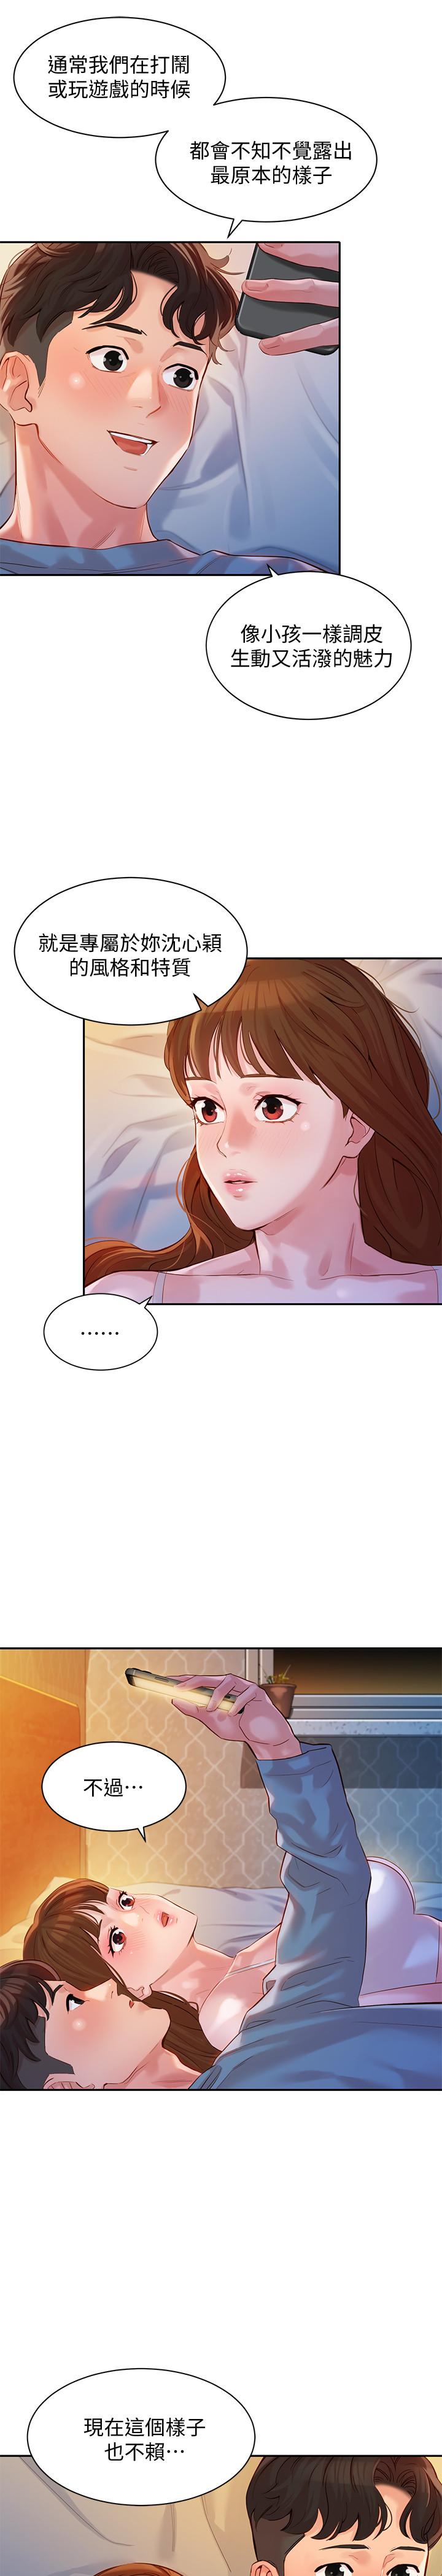 韩国污漫画 女神寫真 第14话-在两人之间流动的微妙情感 29